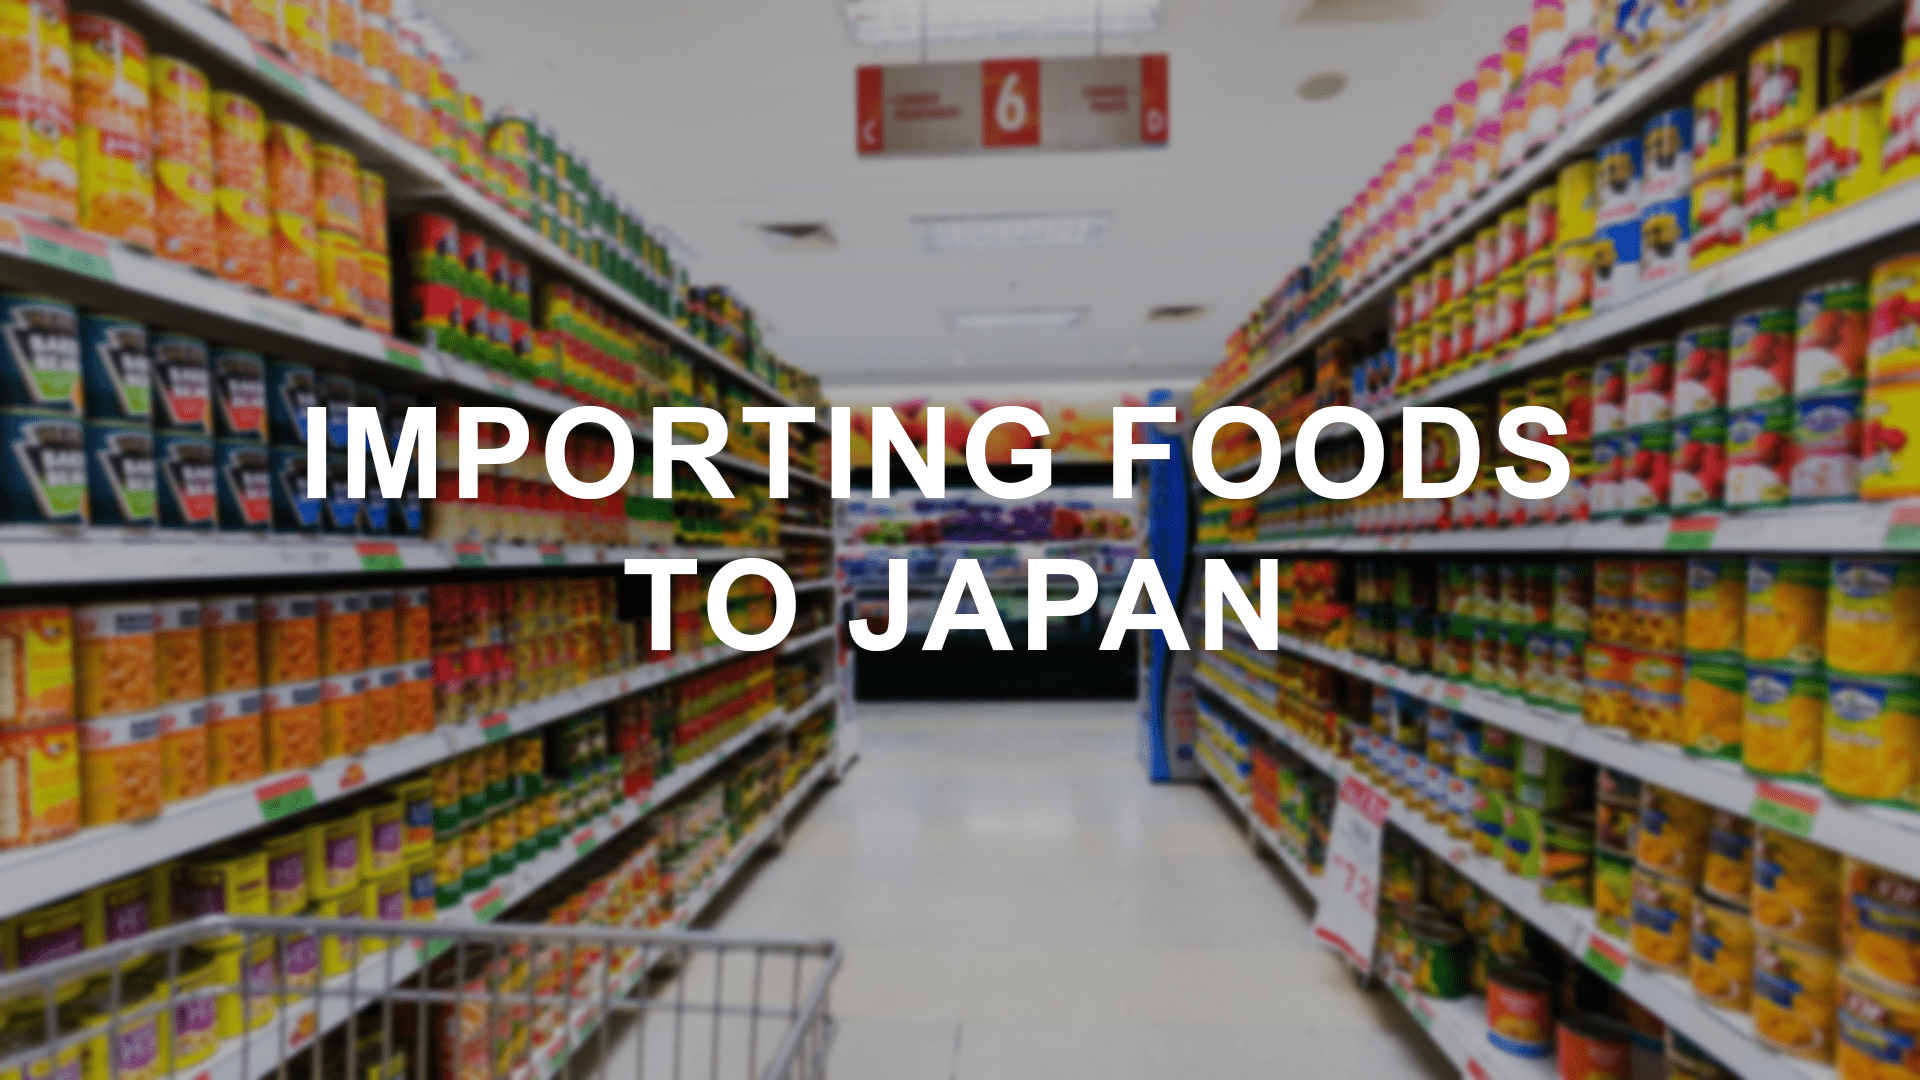 जापान के लिए खाद्य पदार्थों का आयात: क्या आप को पता है की जरूरत है?